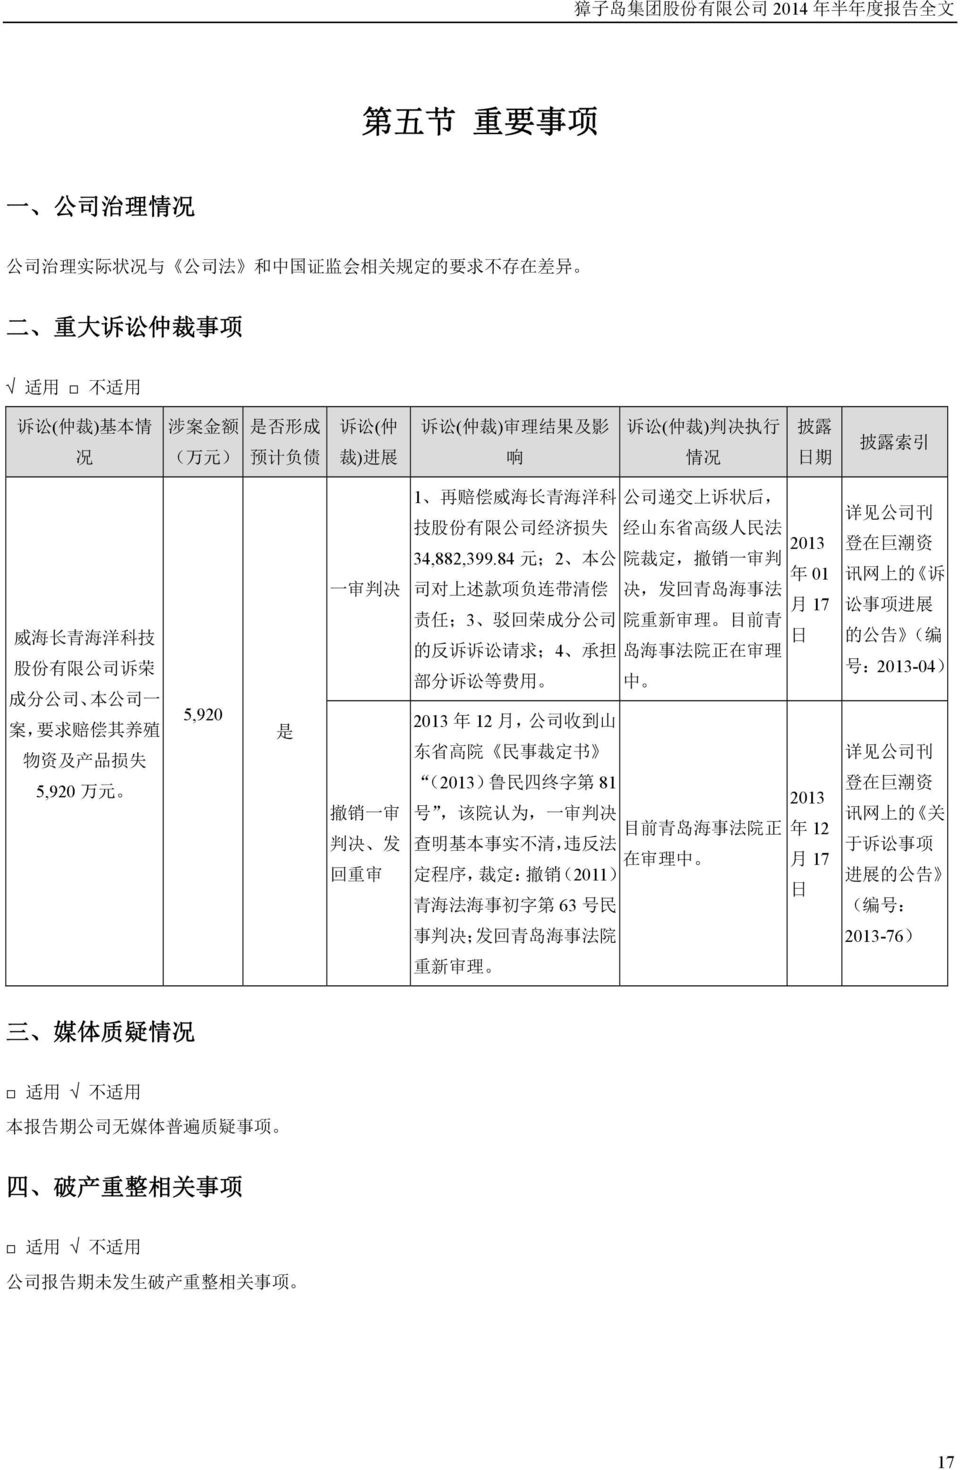 司 递 交 上 诉 状 后, 技 股 份 有 限 公 司 经 济 损 失 经 山 东 省 高 级 人 民 法 34,882,399.